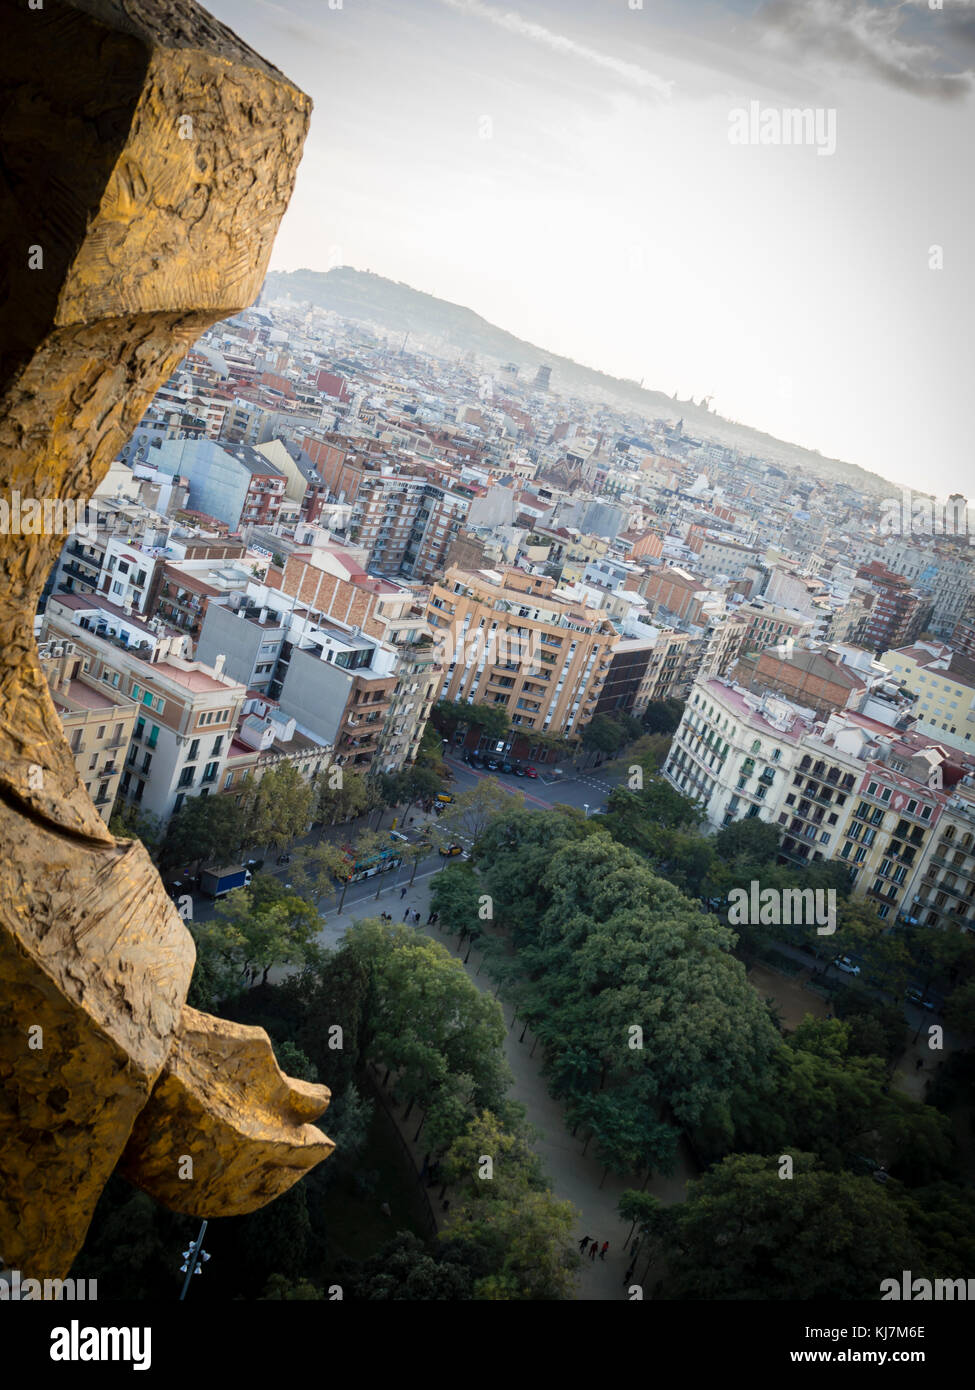 Donnant sur le quartier de l'Eixample de Barcelone, Espagne, à partir d'une tour de la cathédrale de la Sagrada Familia Façade de la Passion. Banque D'Images